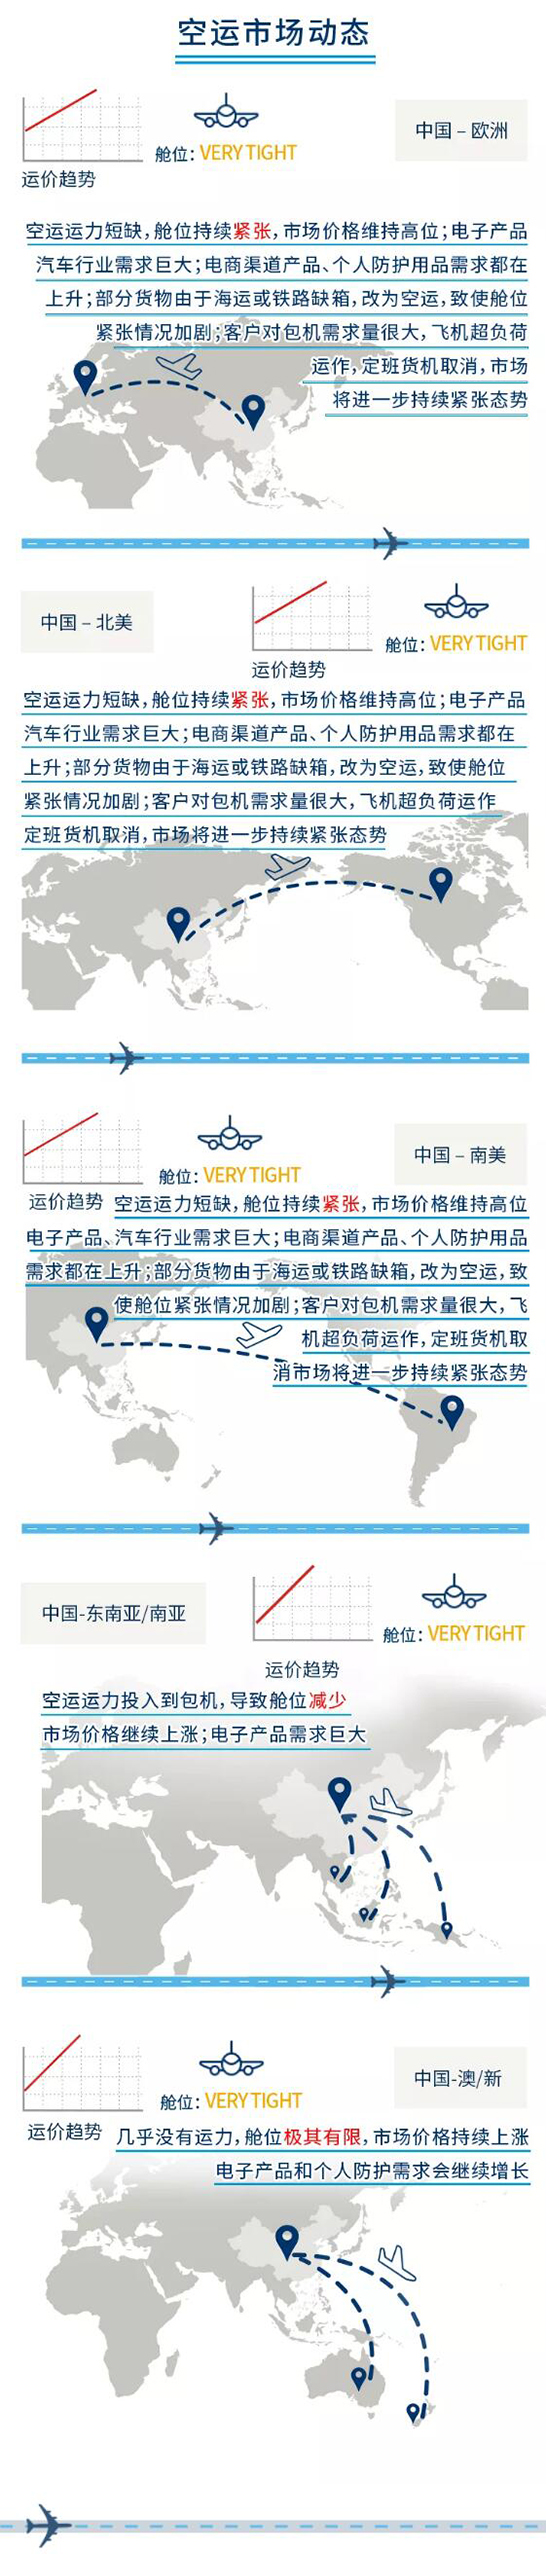 全球海运、空运市场最新动态（十一月中旬至十一月下旬）